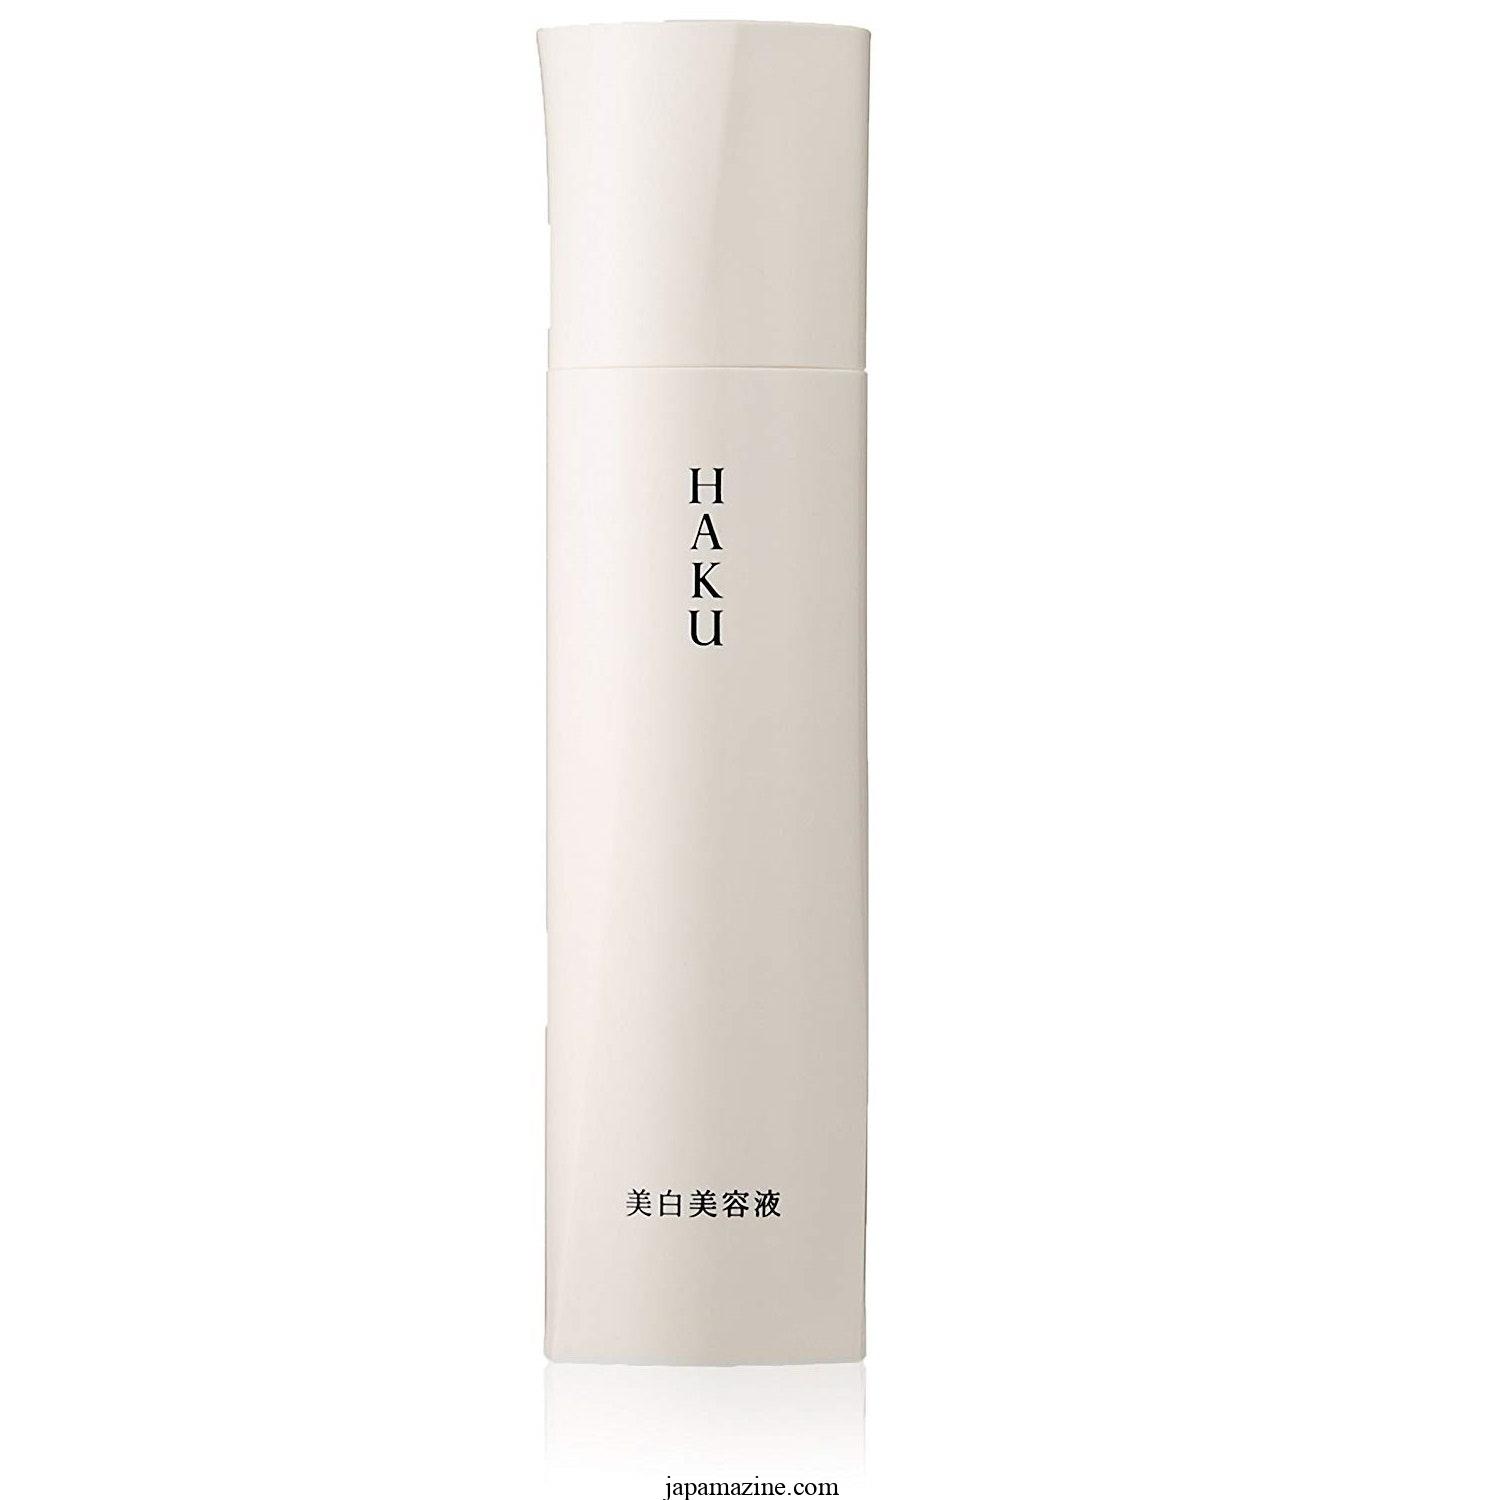 Shiseido HAKU Melano Focus Z Serum 4